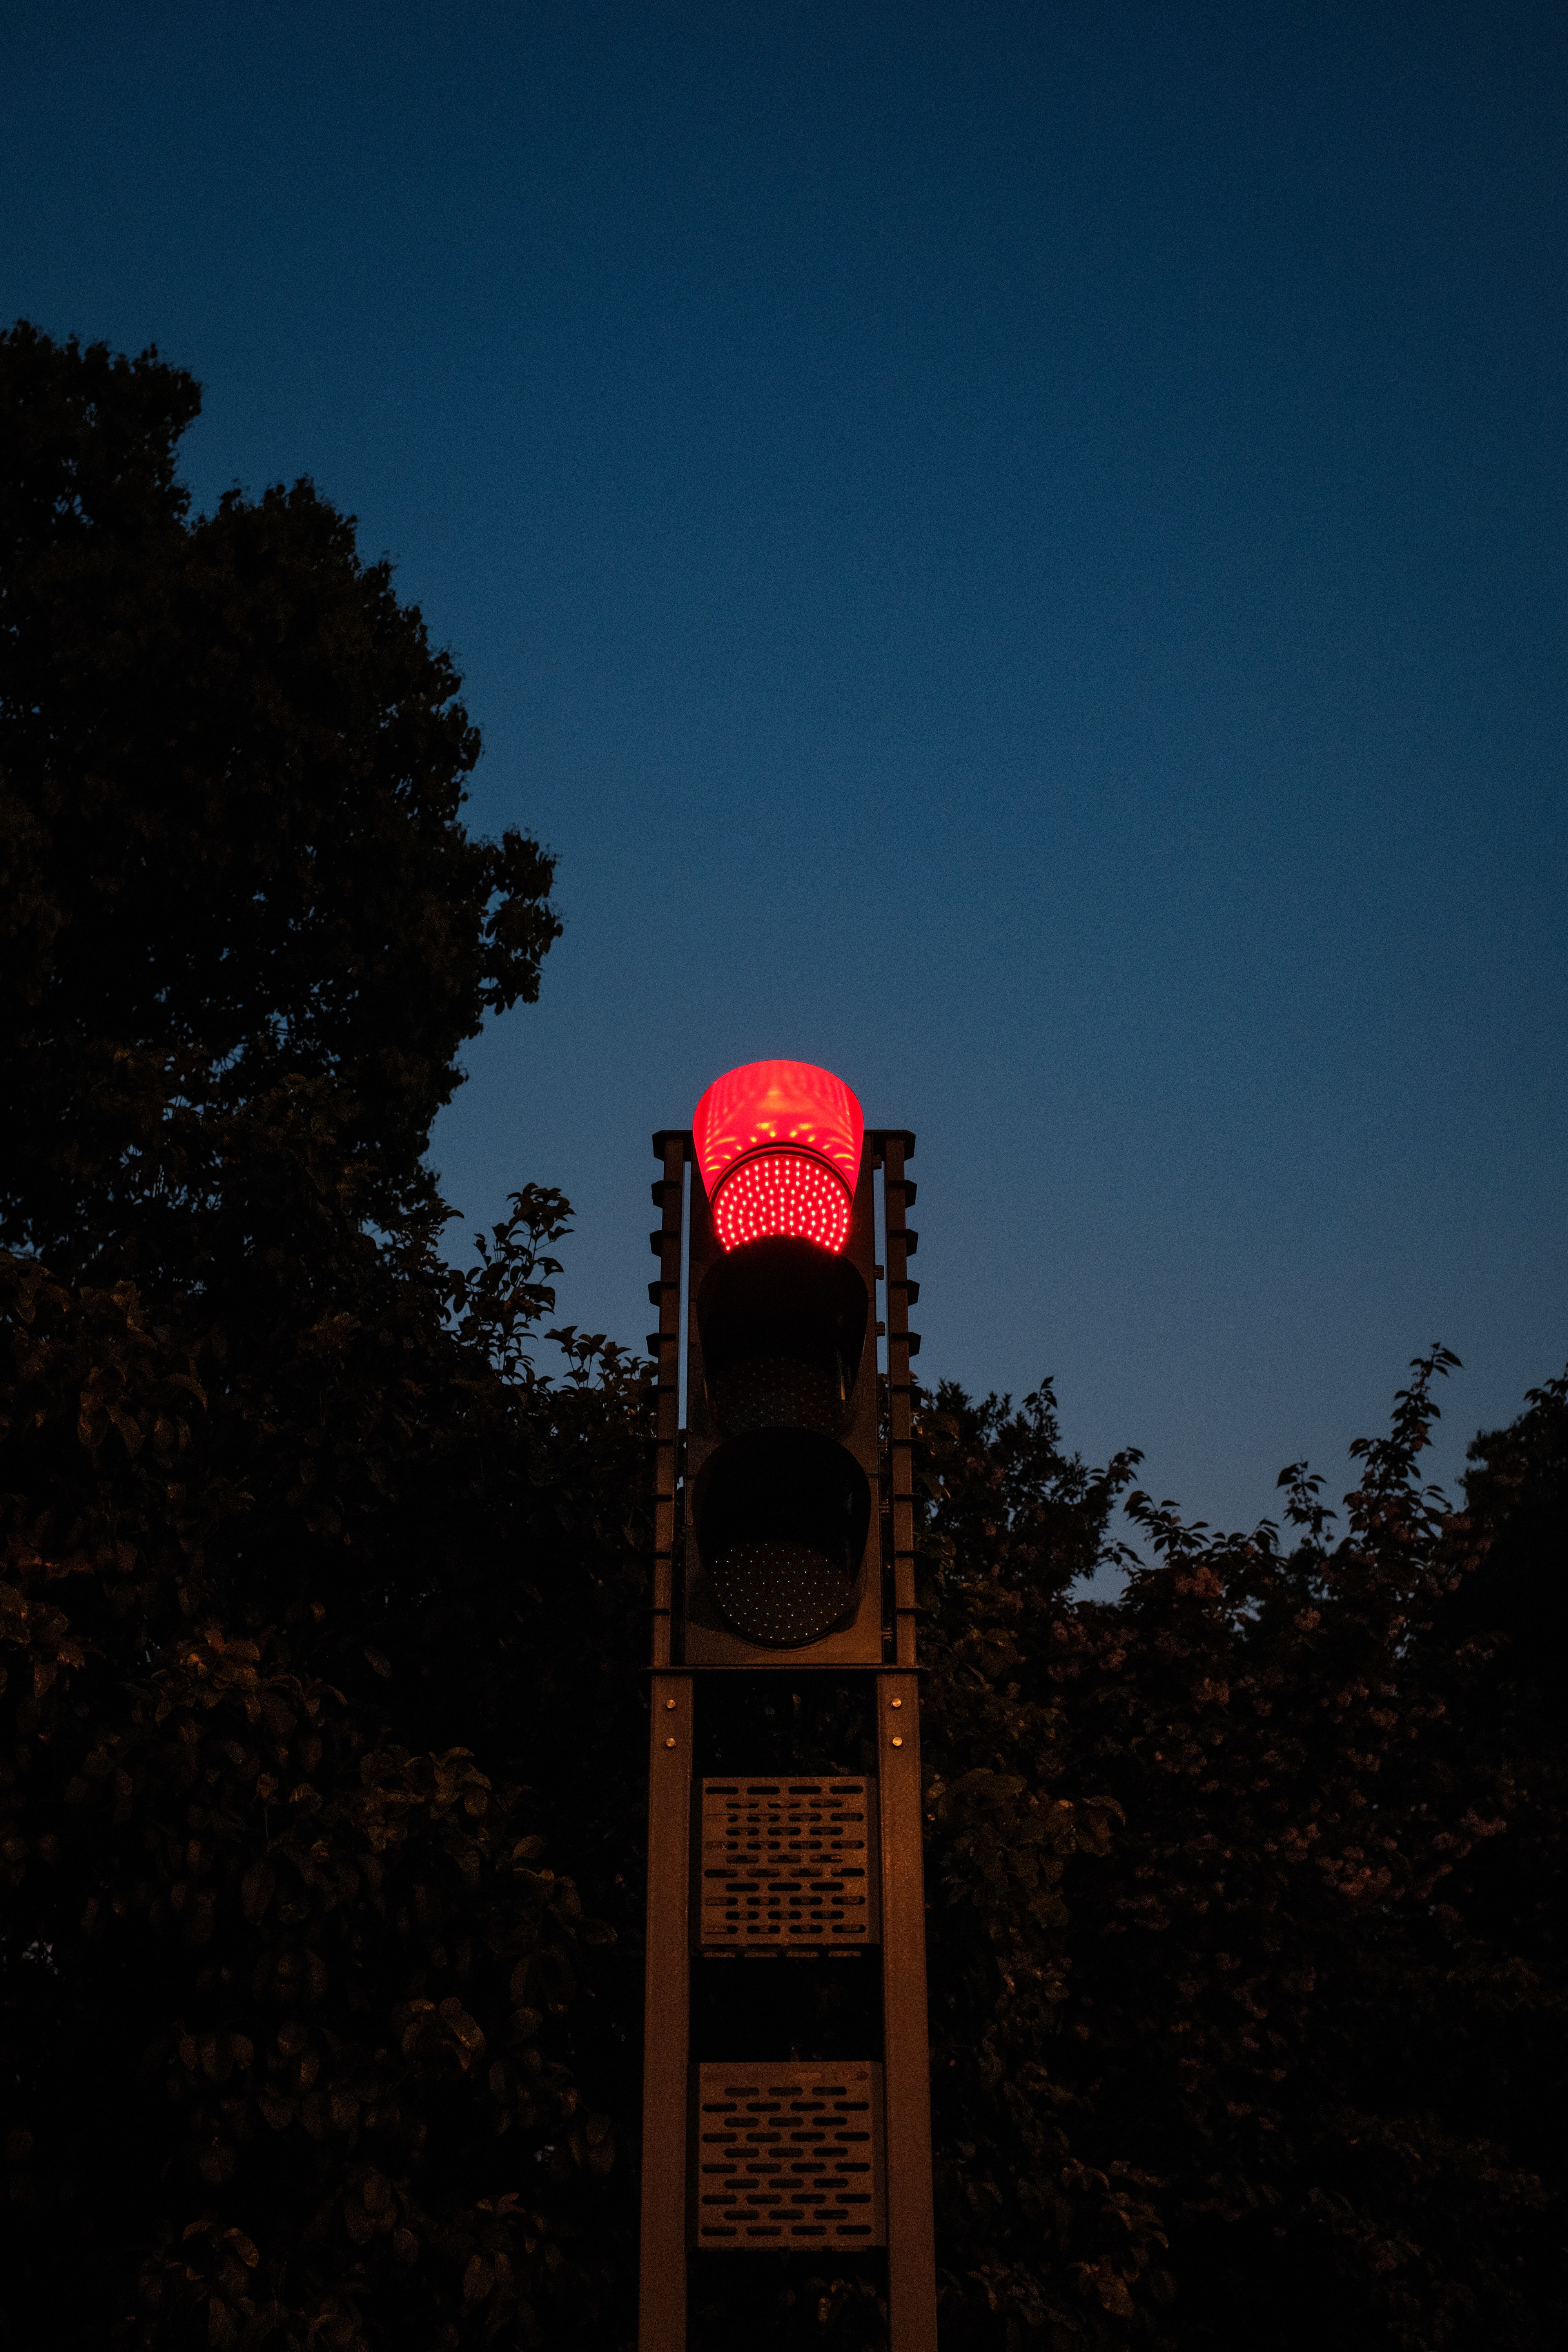 traffic light, dark, evening, pillar, post